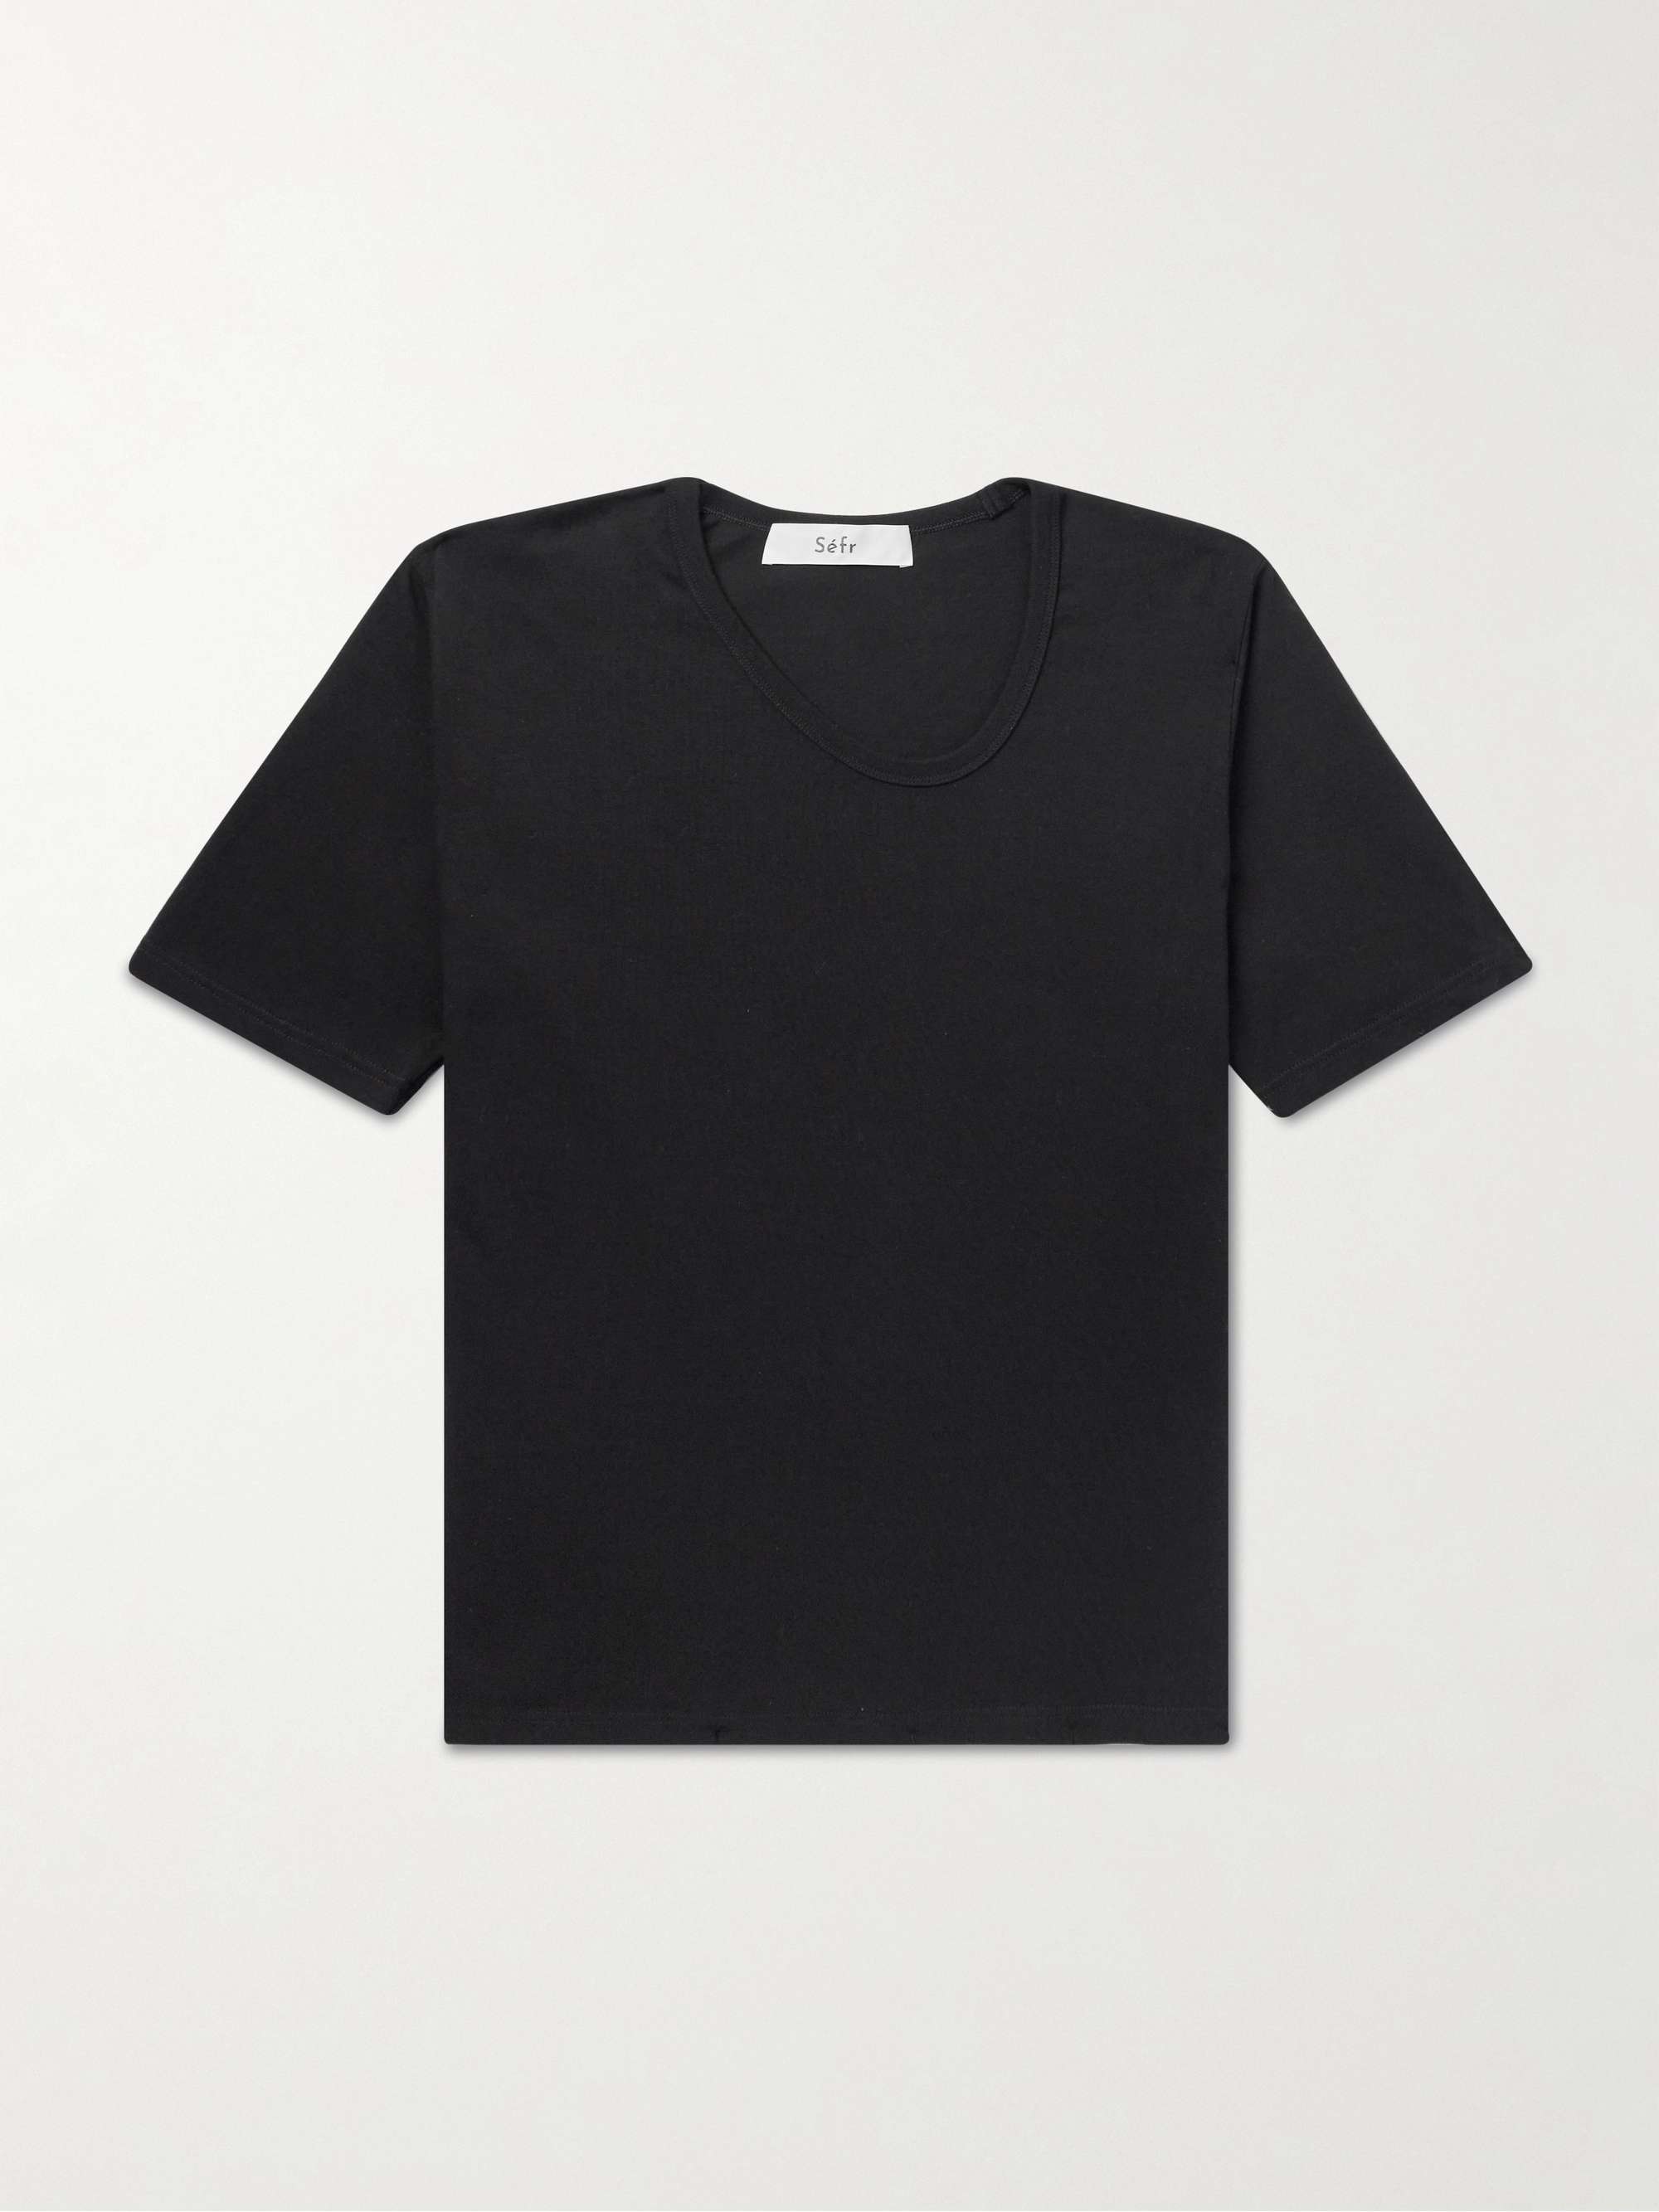 SÉFR Uneven Cotton-Jersey T-Shirt for Men | MR PORTER